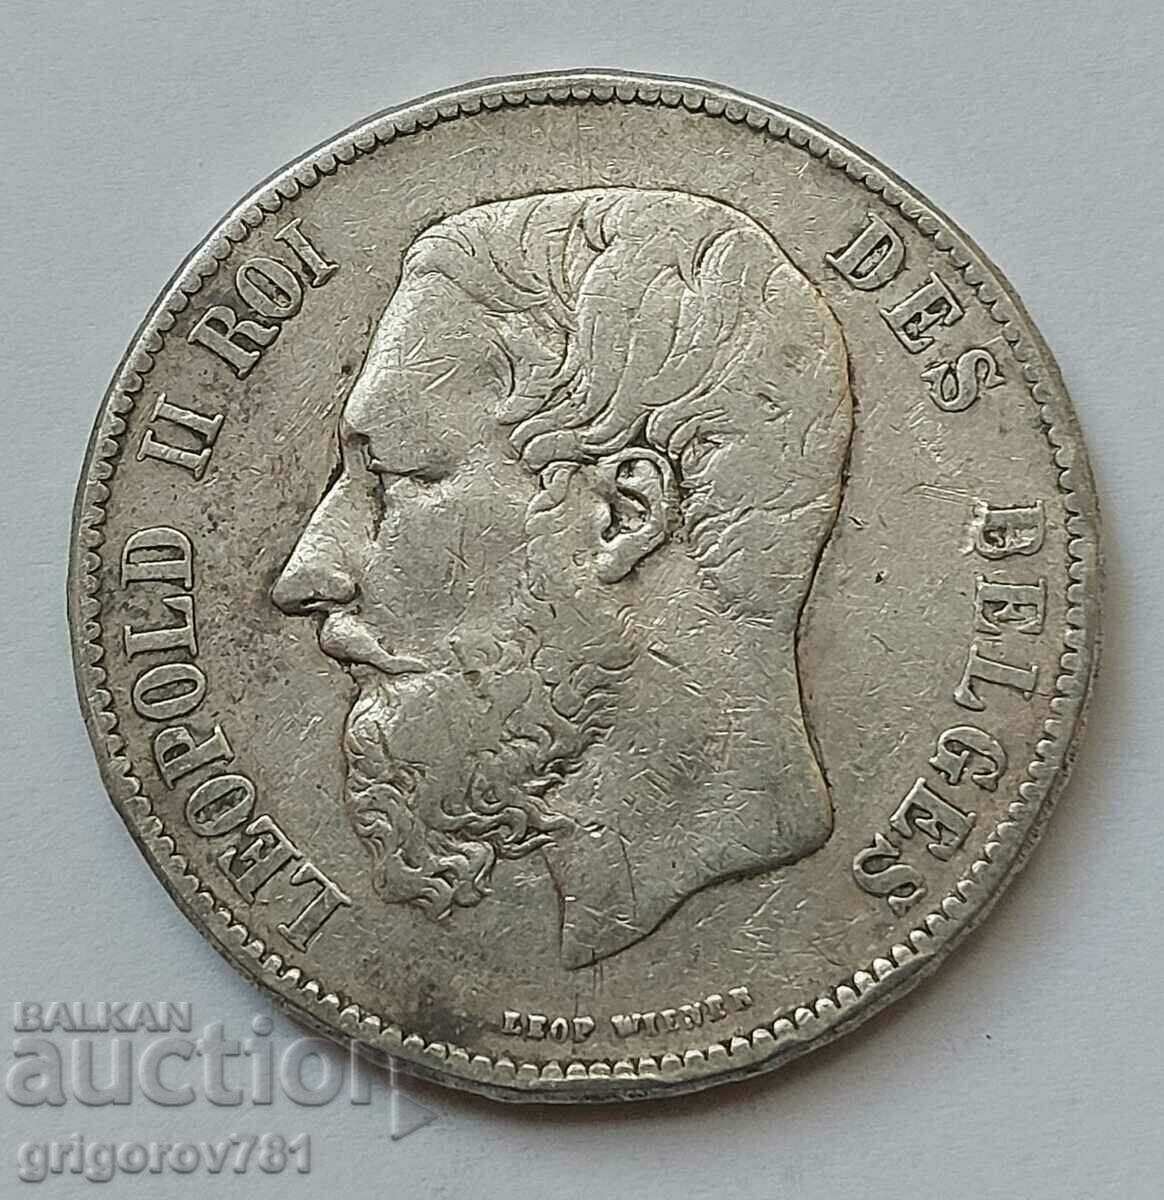 5 Francs Silver Belgium 1870 Silver Coin #170